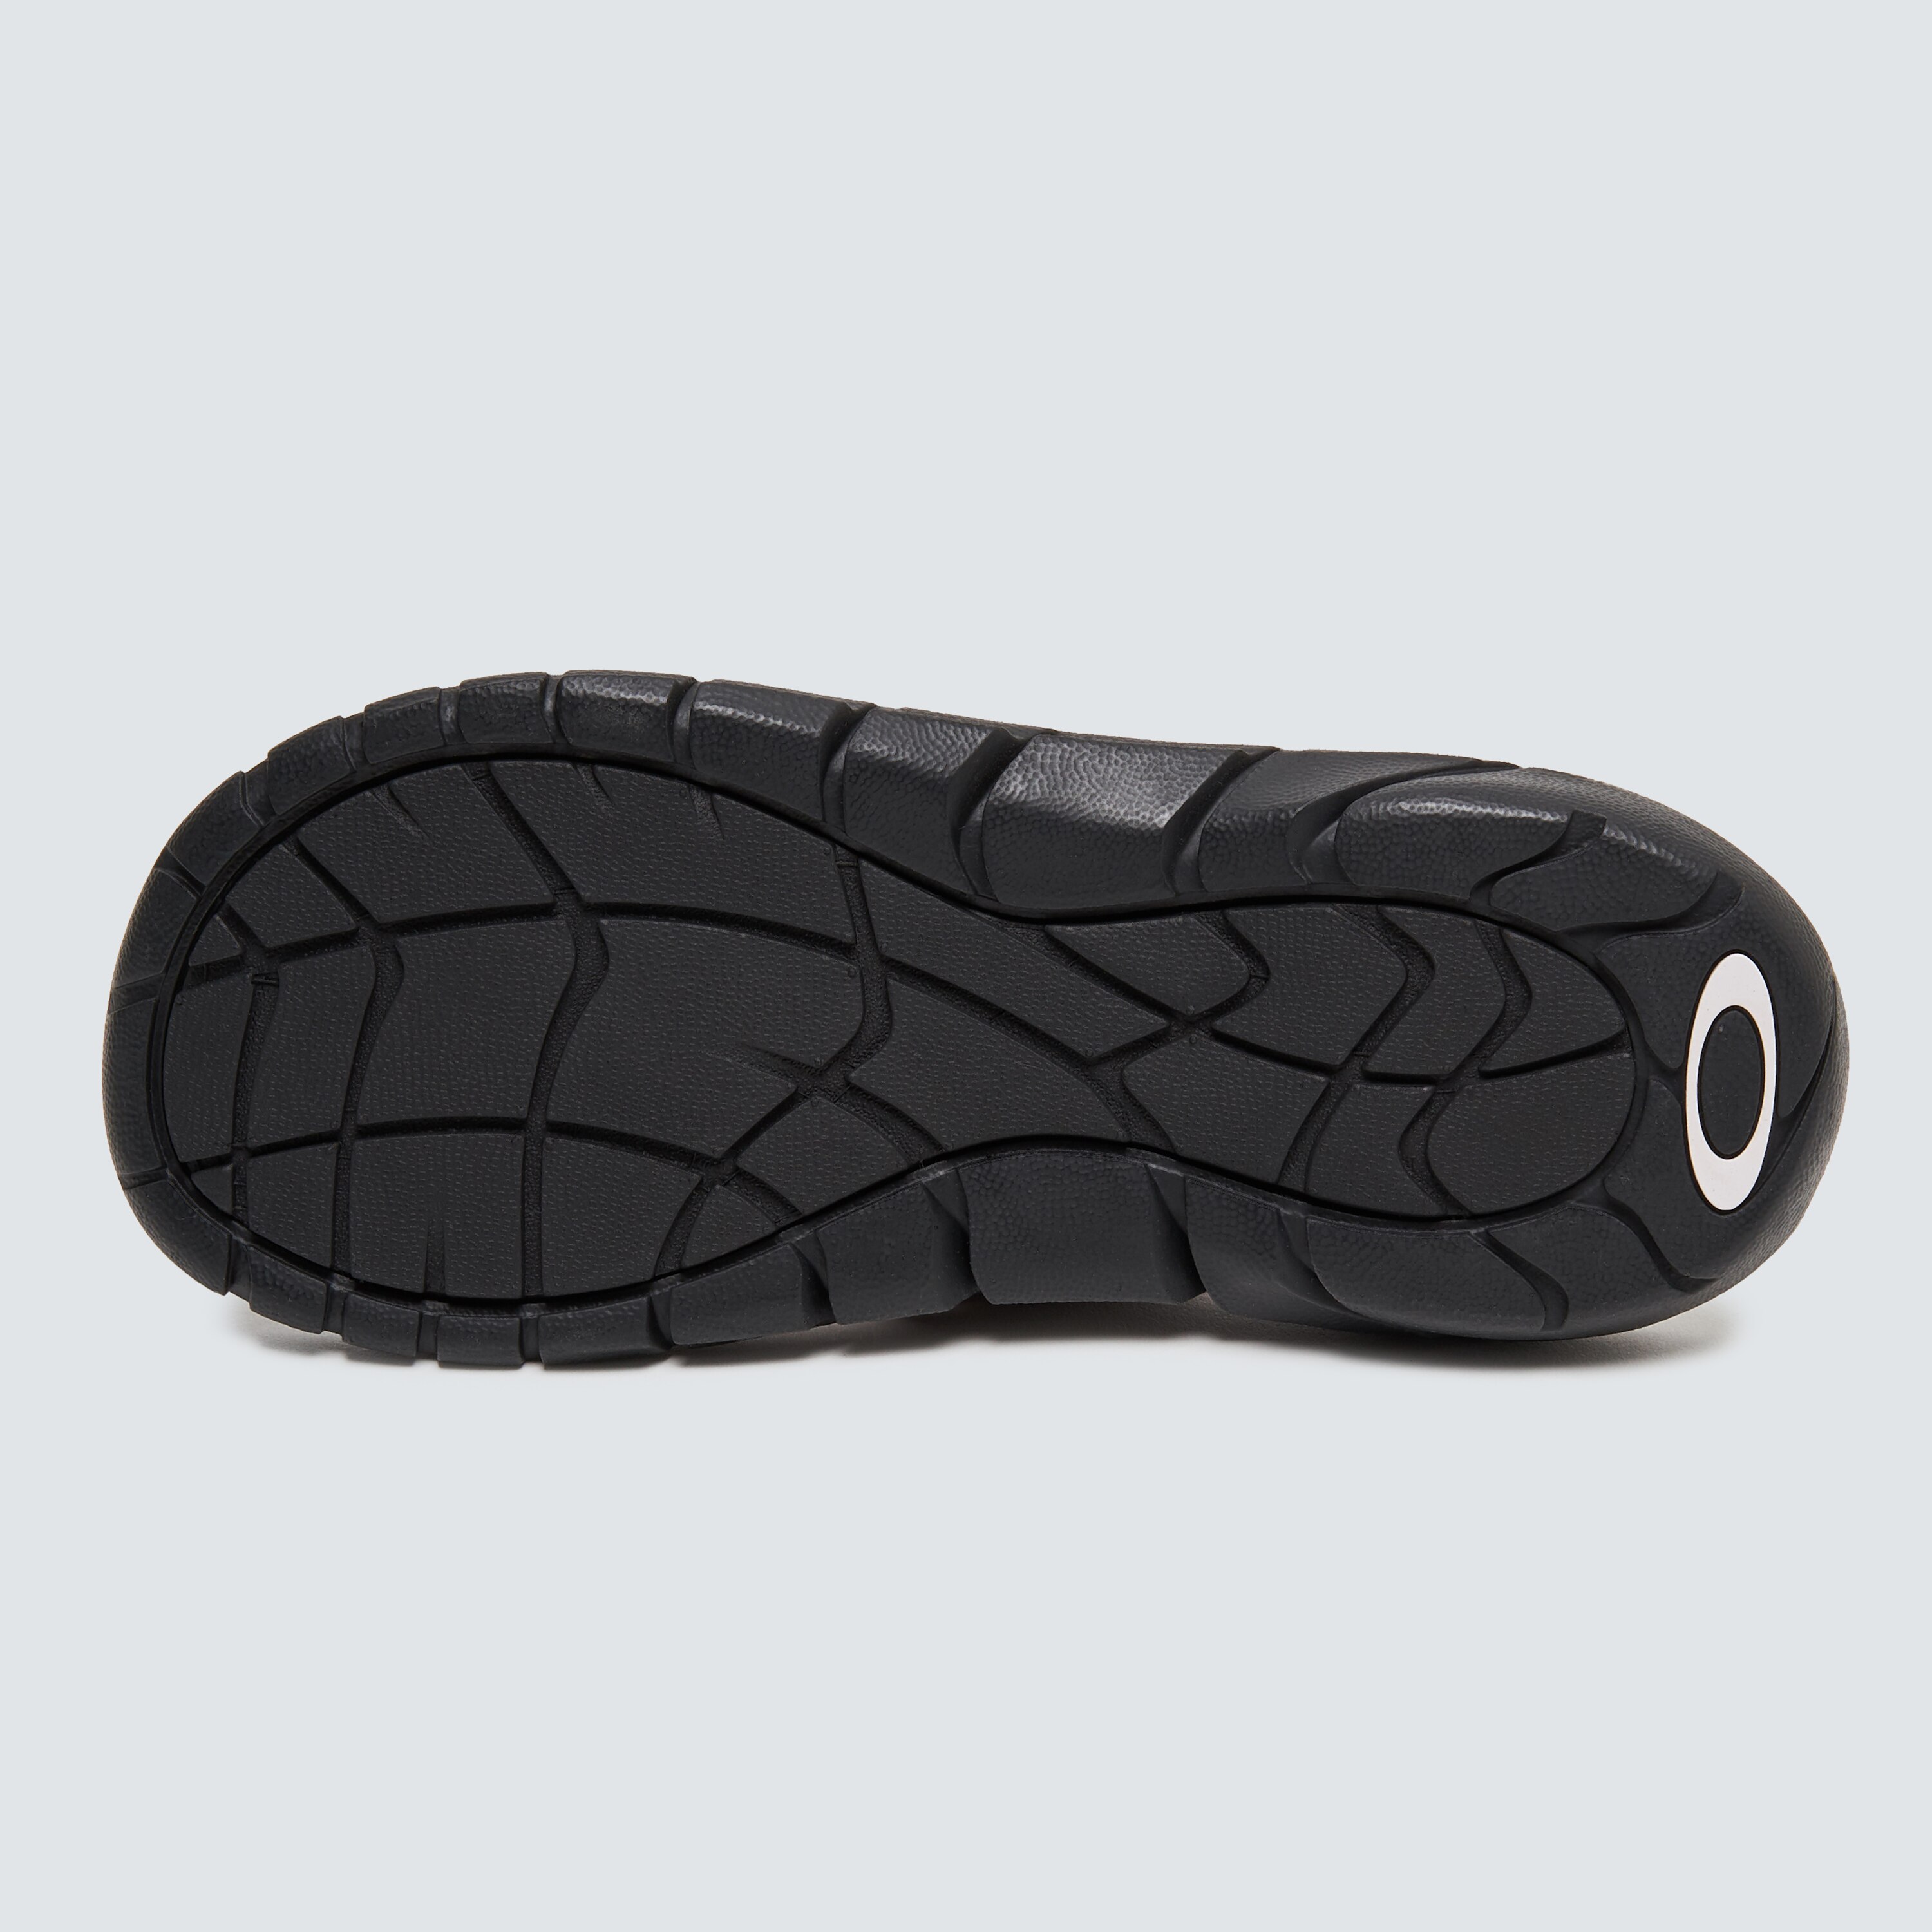 Oakley Rubber Super Coil Sandal 2.0 in Black for Men slides and flip flops Sandals and flip-flops Blue Save 5% Mens Shoes Sandals 